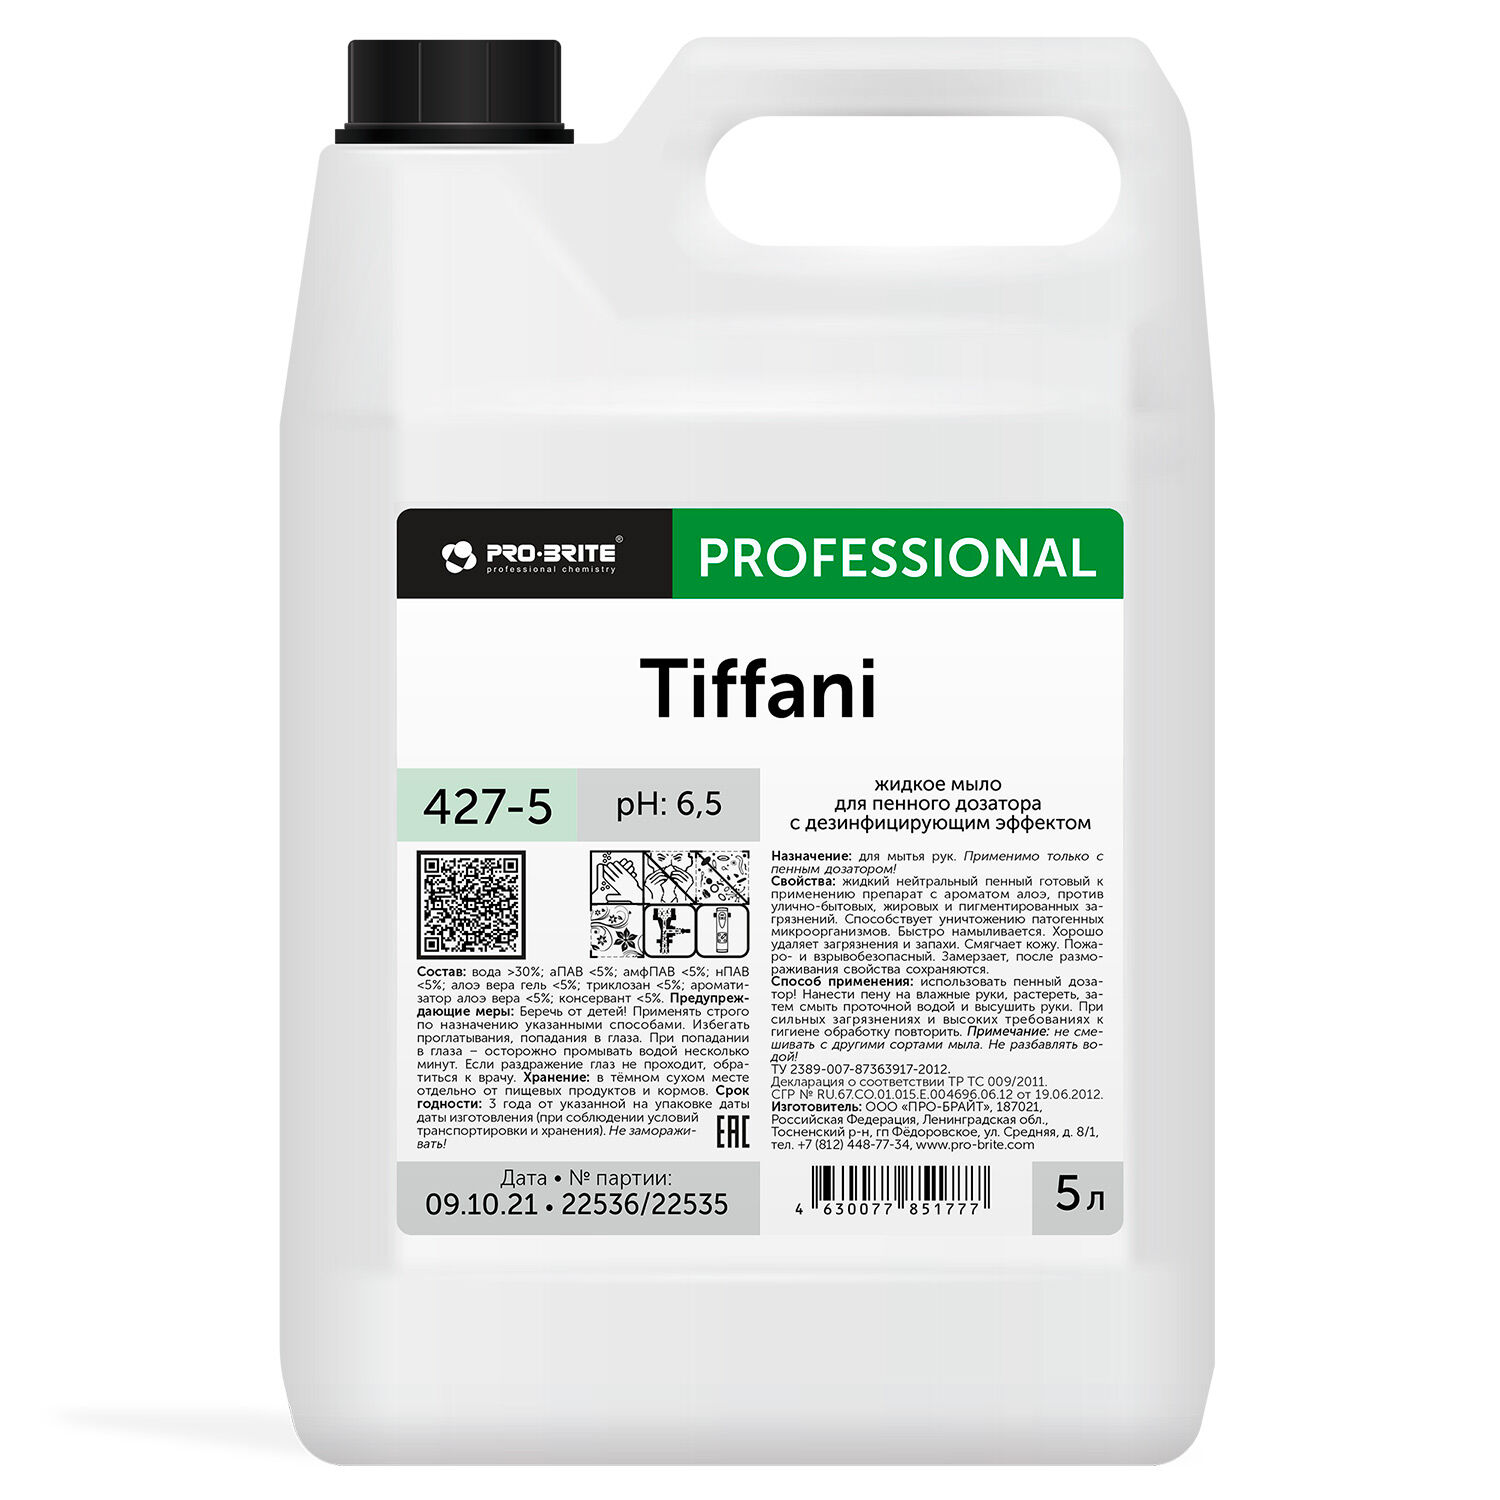 Жидкое мыло для пенного дозатора с дезинфицирующим эффектом Tiffani